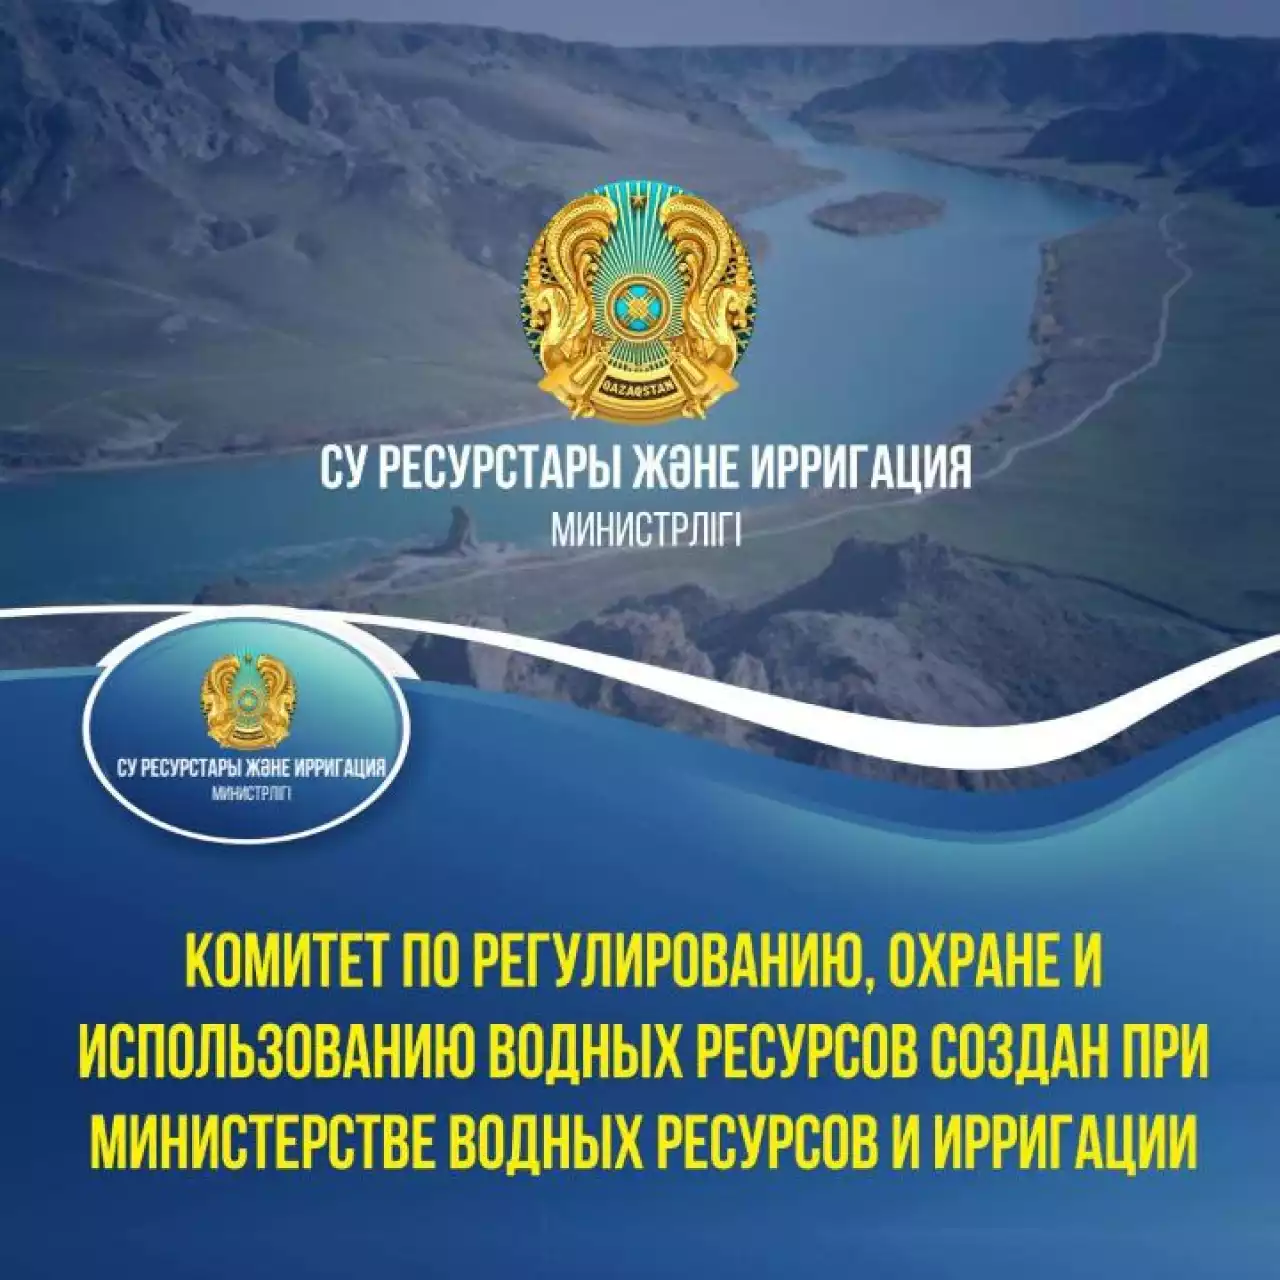 Комитет по регулированию, охране и использованию водных ресурсов создан при Министерстве водных ресурсов и ирригации